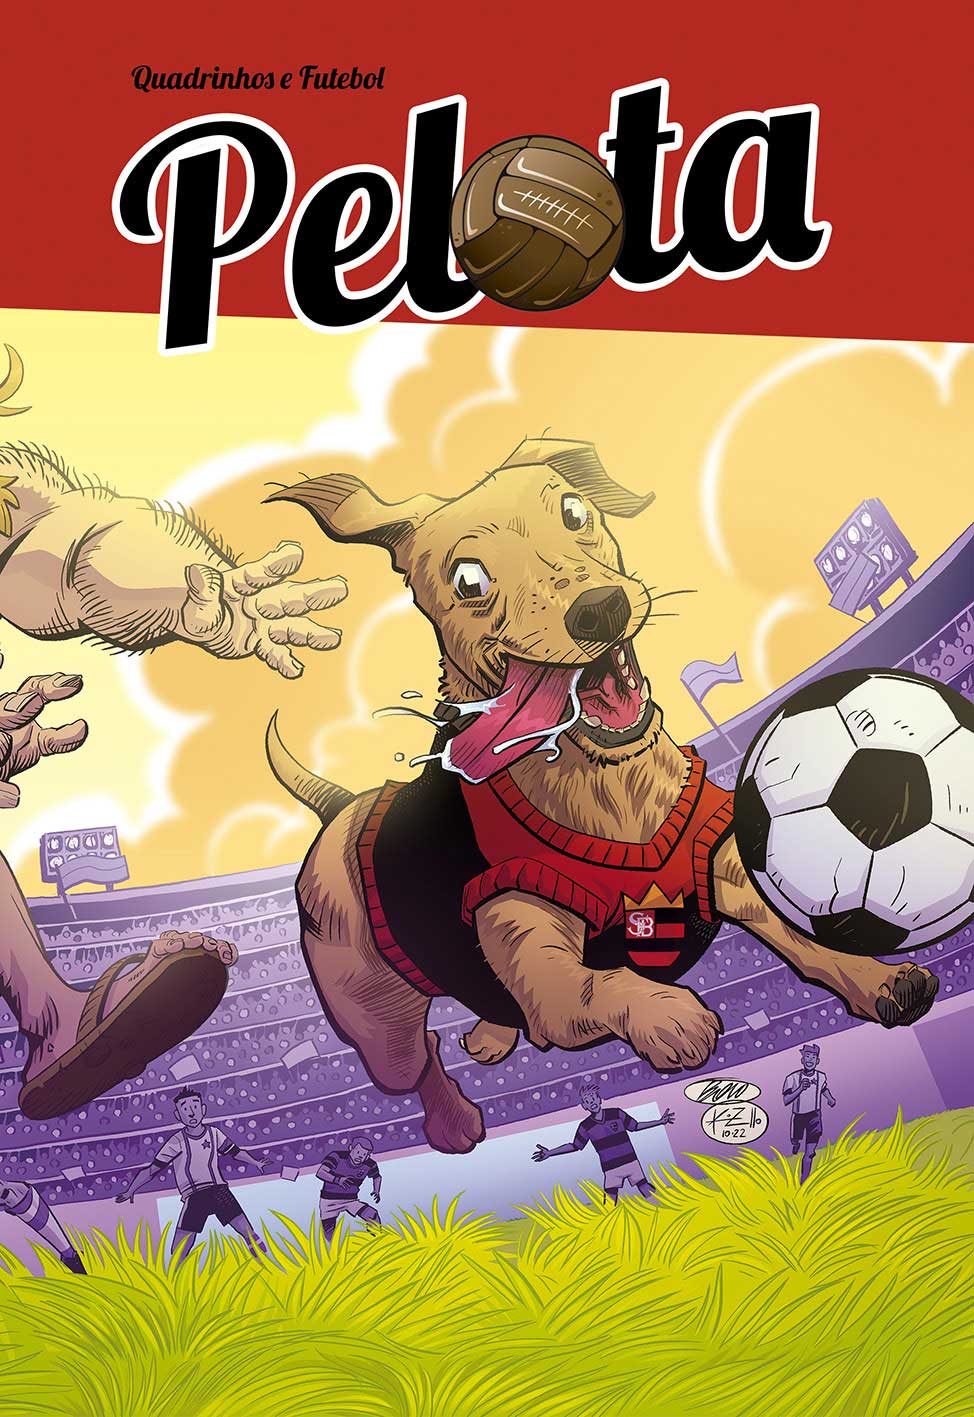 Capa da HQ Pelota - Quadrinhos e Futebol com destaque na imagem para o vira-lata Billy, que veste uma camisa do seu time enquanto corre de um torcedor e atrás de uma bola de futebol.